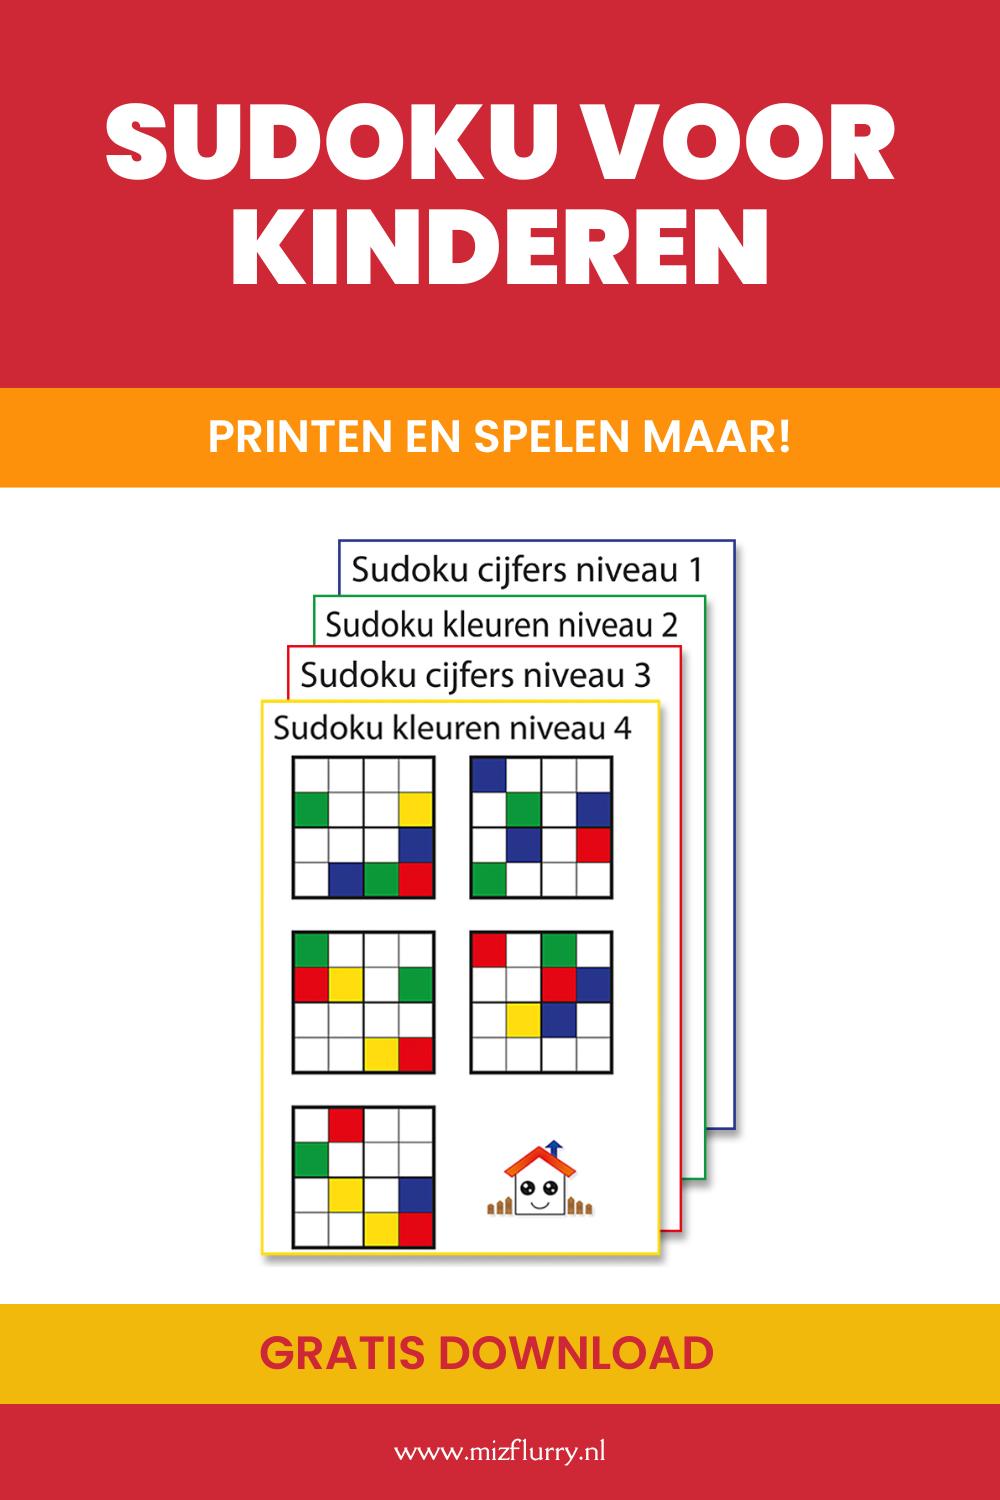 Sudoku voor kind printen